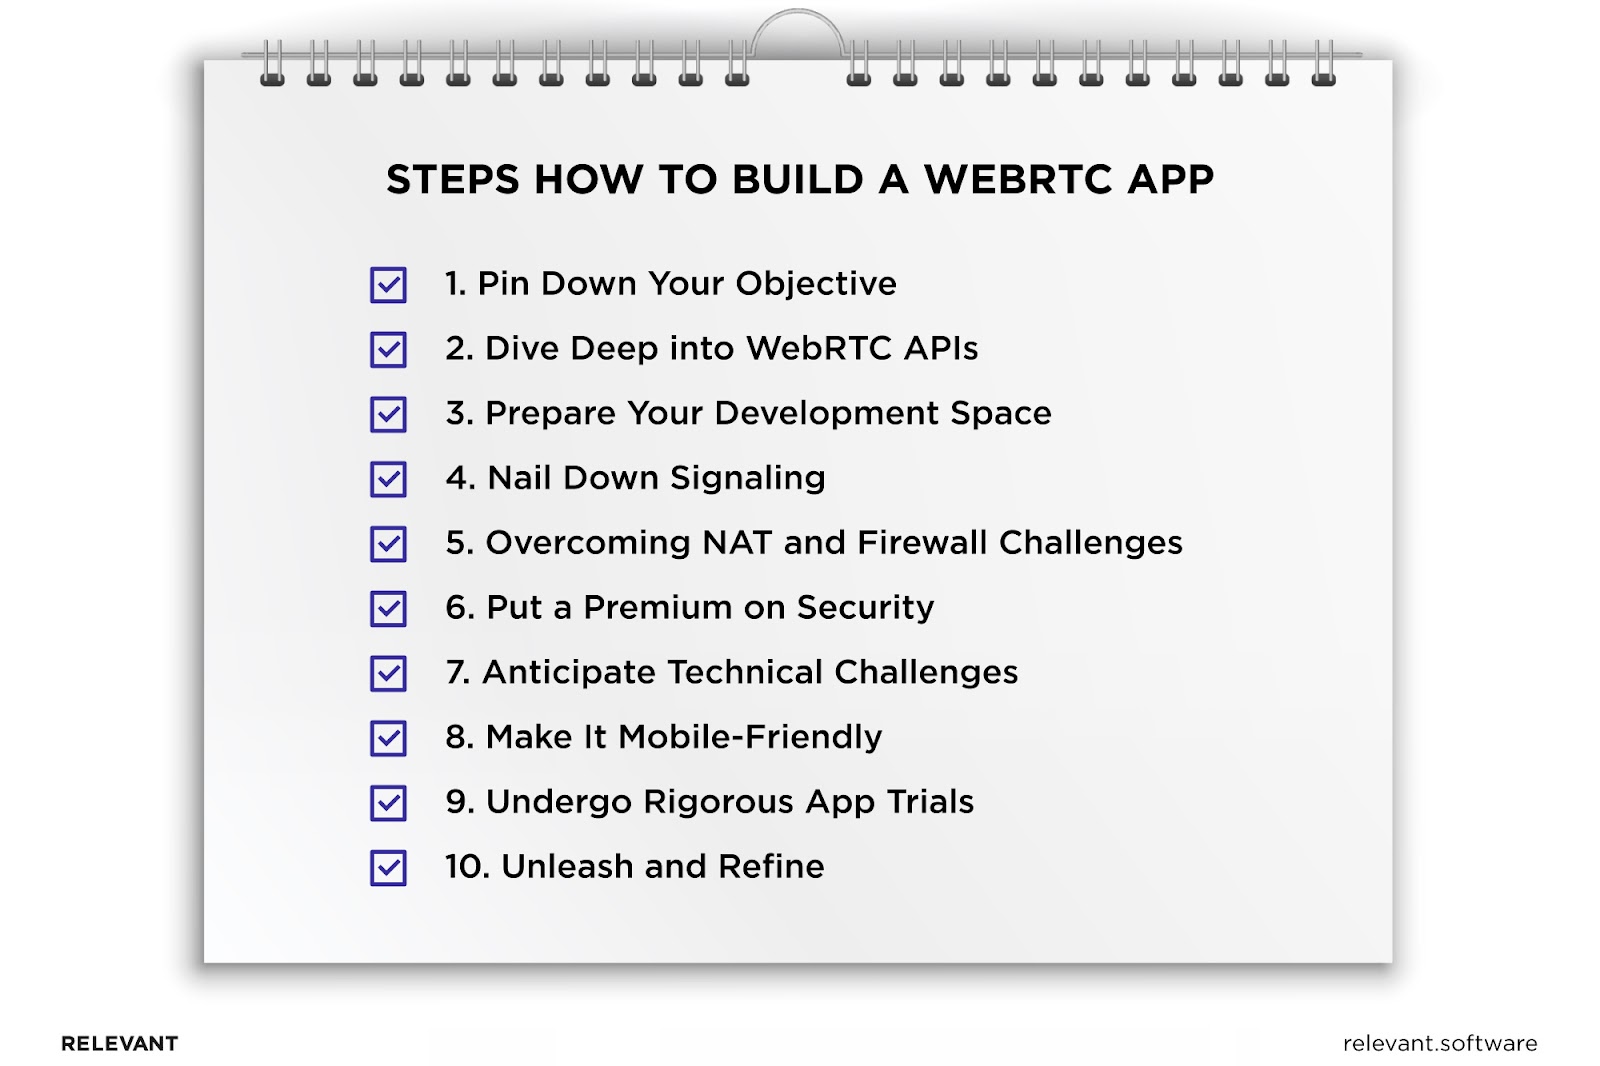 WebRTC applications